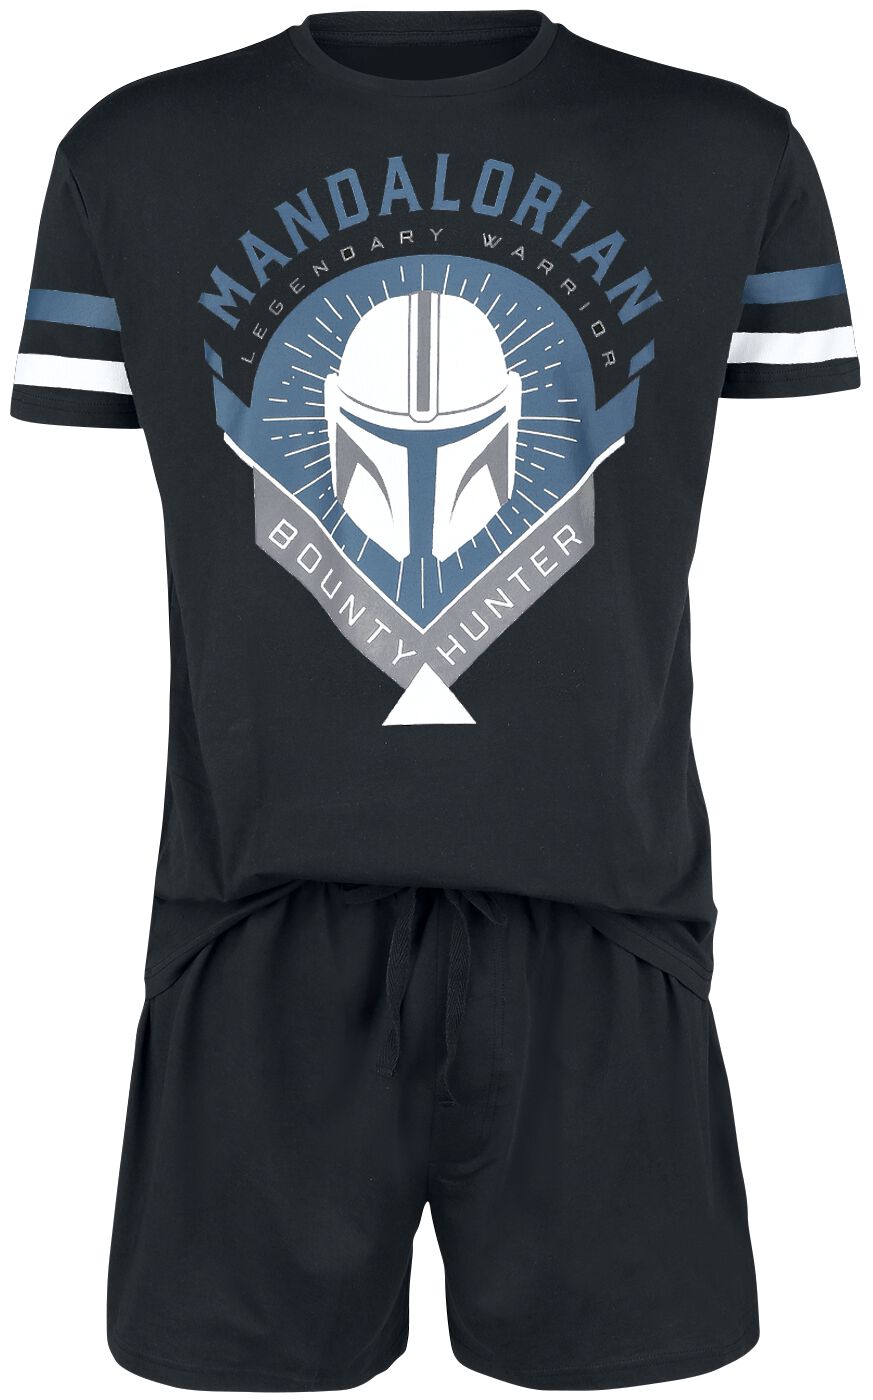 Star Wars Schlafanzug - The Mandalorian - Bounty Hunter - S bis 5XL - für Männer - Größe 5XL - schwarz  - EMP exklusives Merchandise!